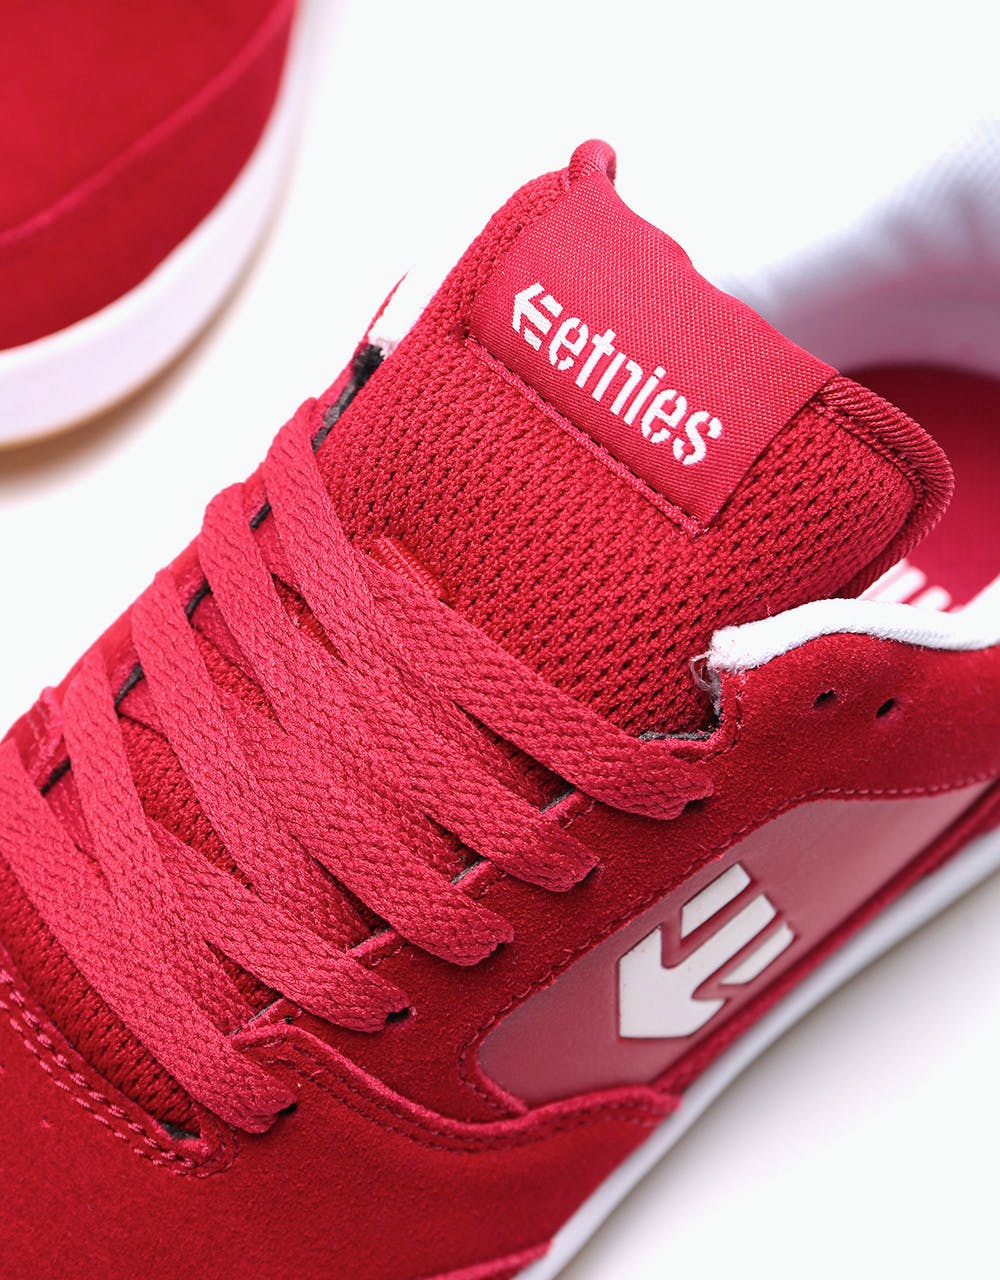 Etnies x Michelin Veer Skate Shoes - Red/White/Gum